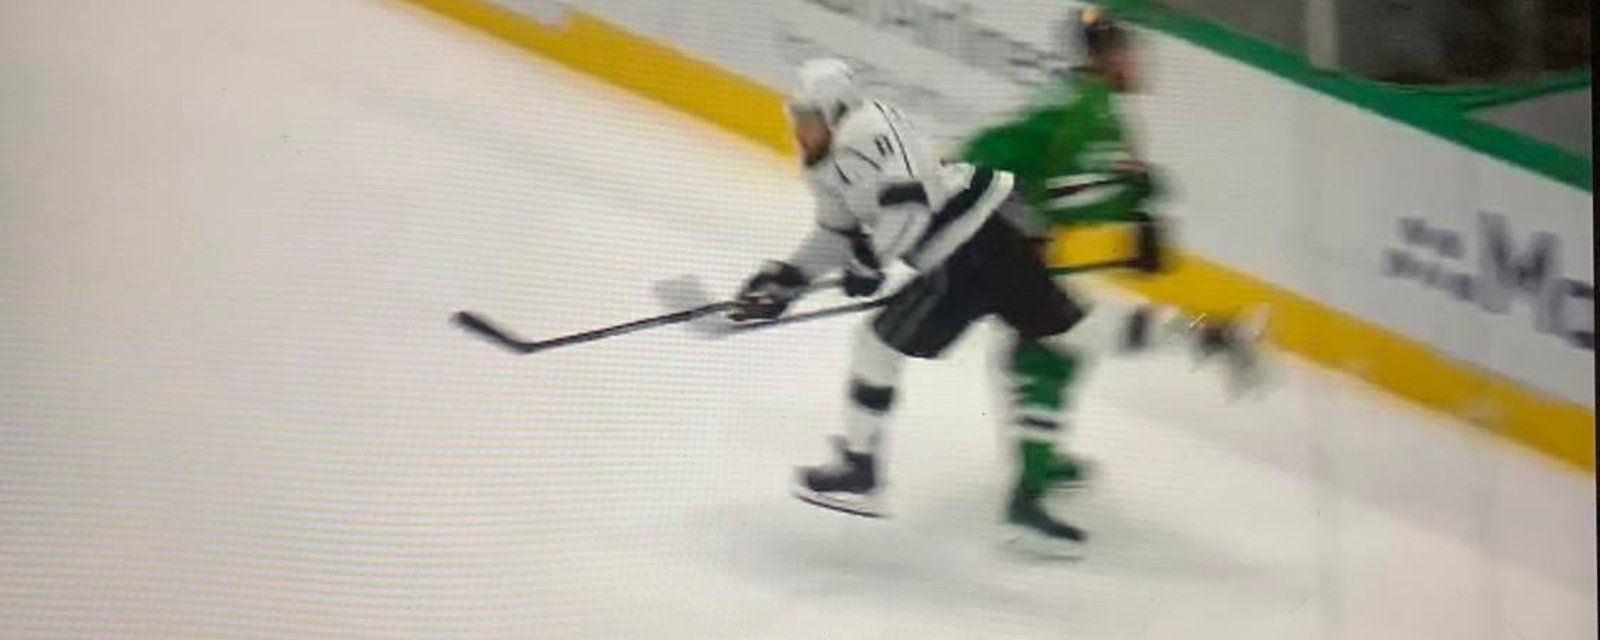 VIDÉO | Drew Doughty escorté de la glace après être entré en collision avec un autre joueur. 